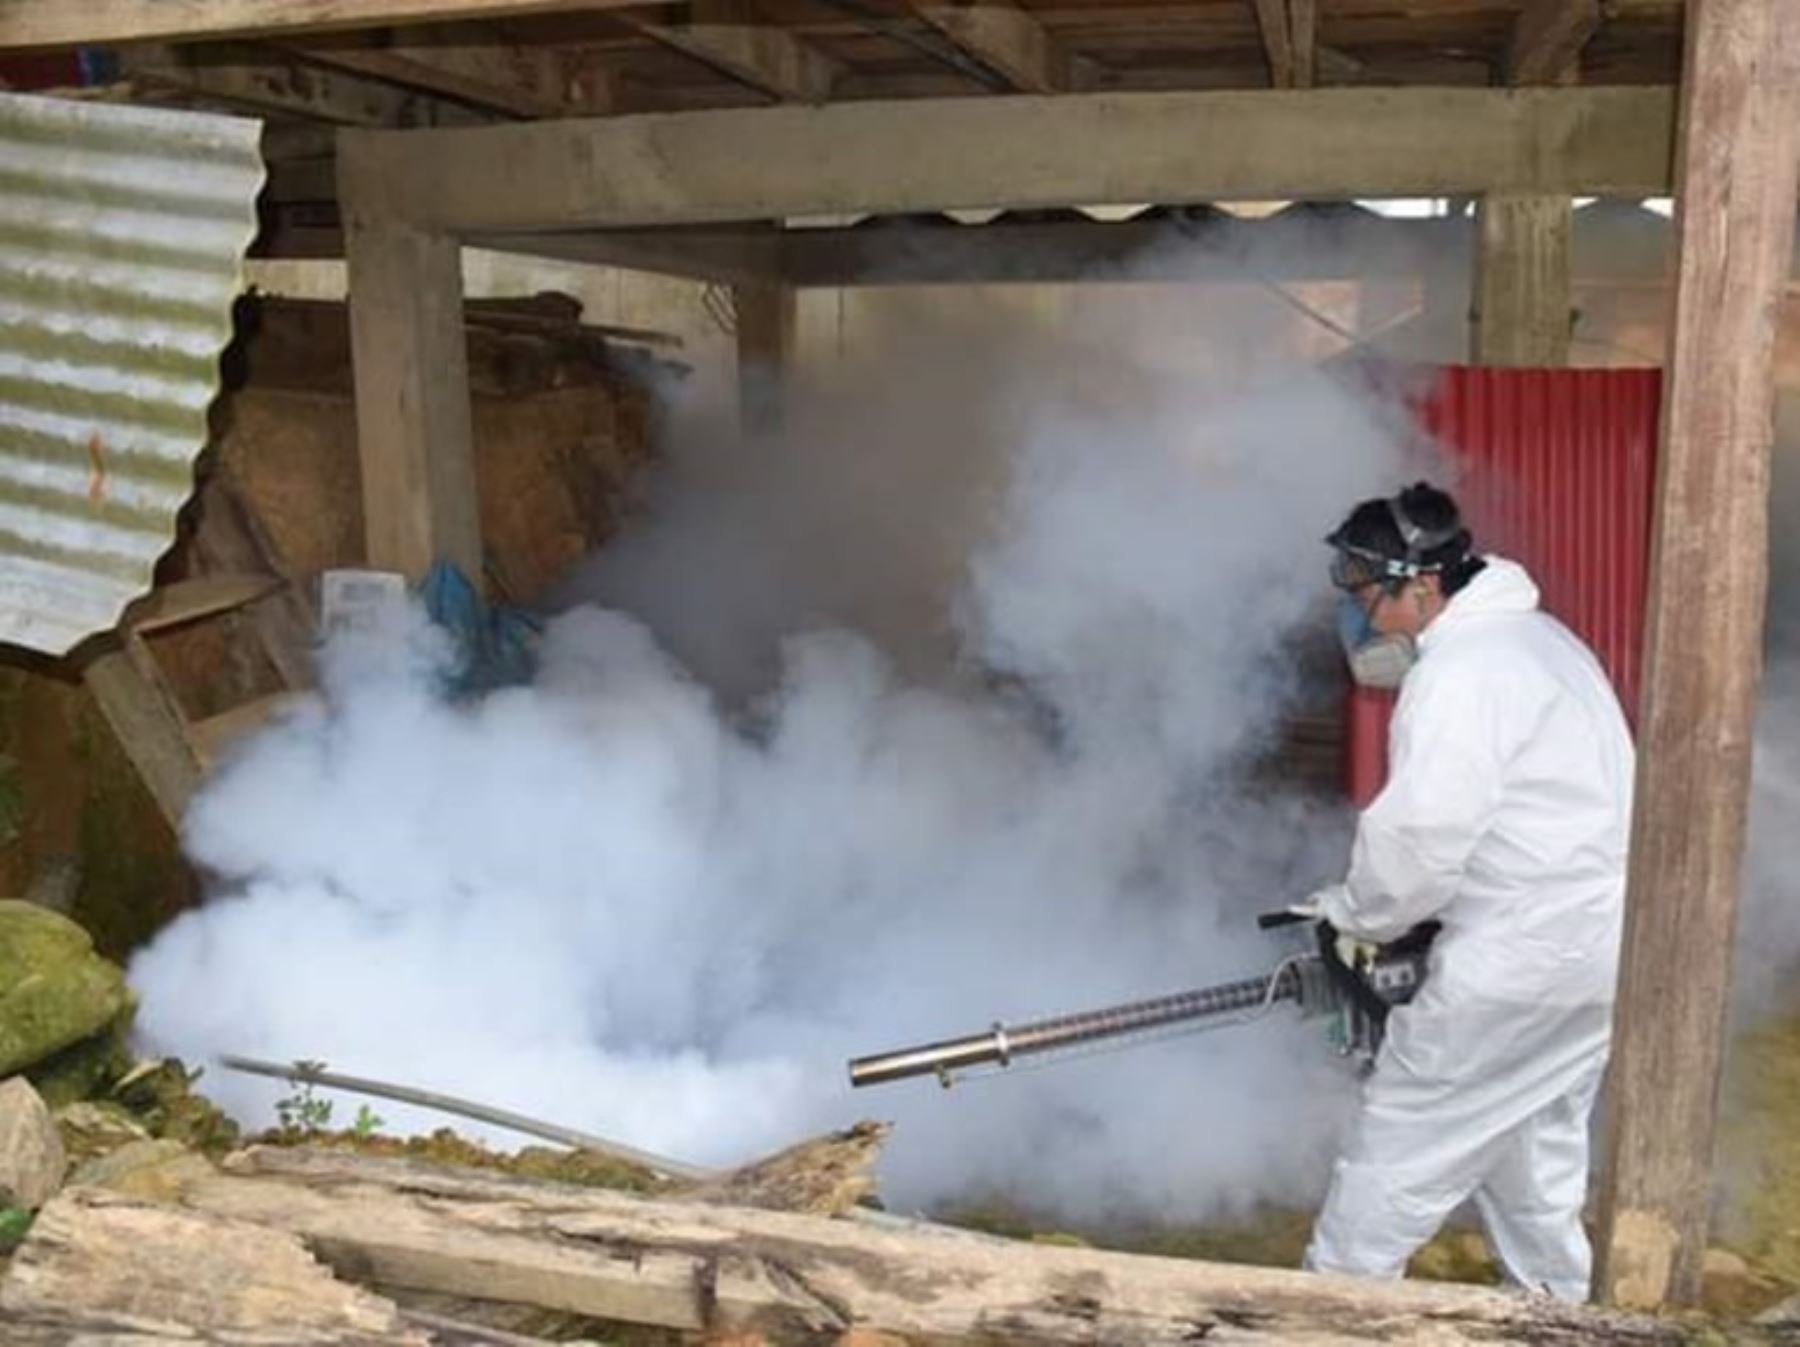 La Diresa Puno declara en alerta epidemiológica por brote de dengue al distrito de San Pedro de Putina Punco, ubicado en la provincia de Sandia. ANDINA/Difusión